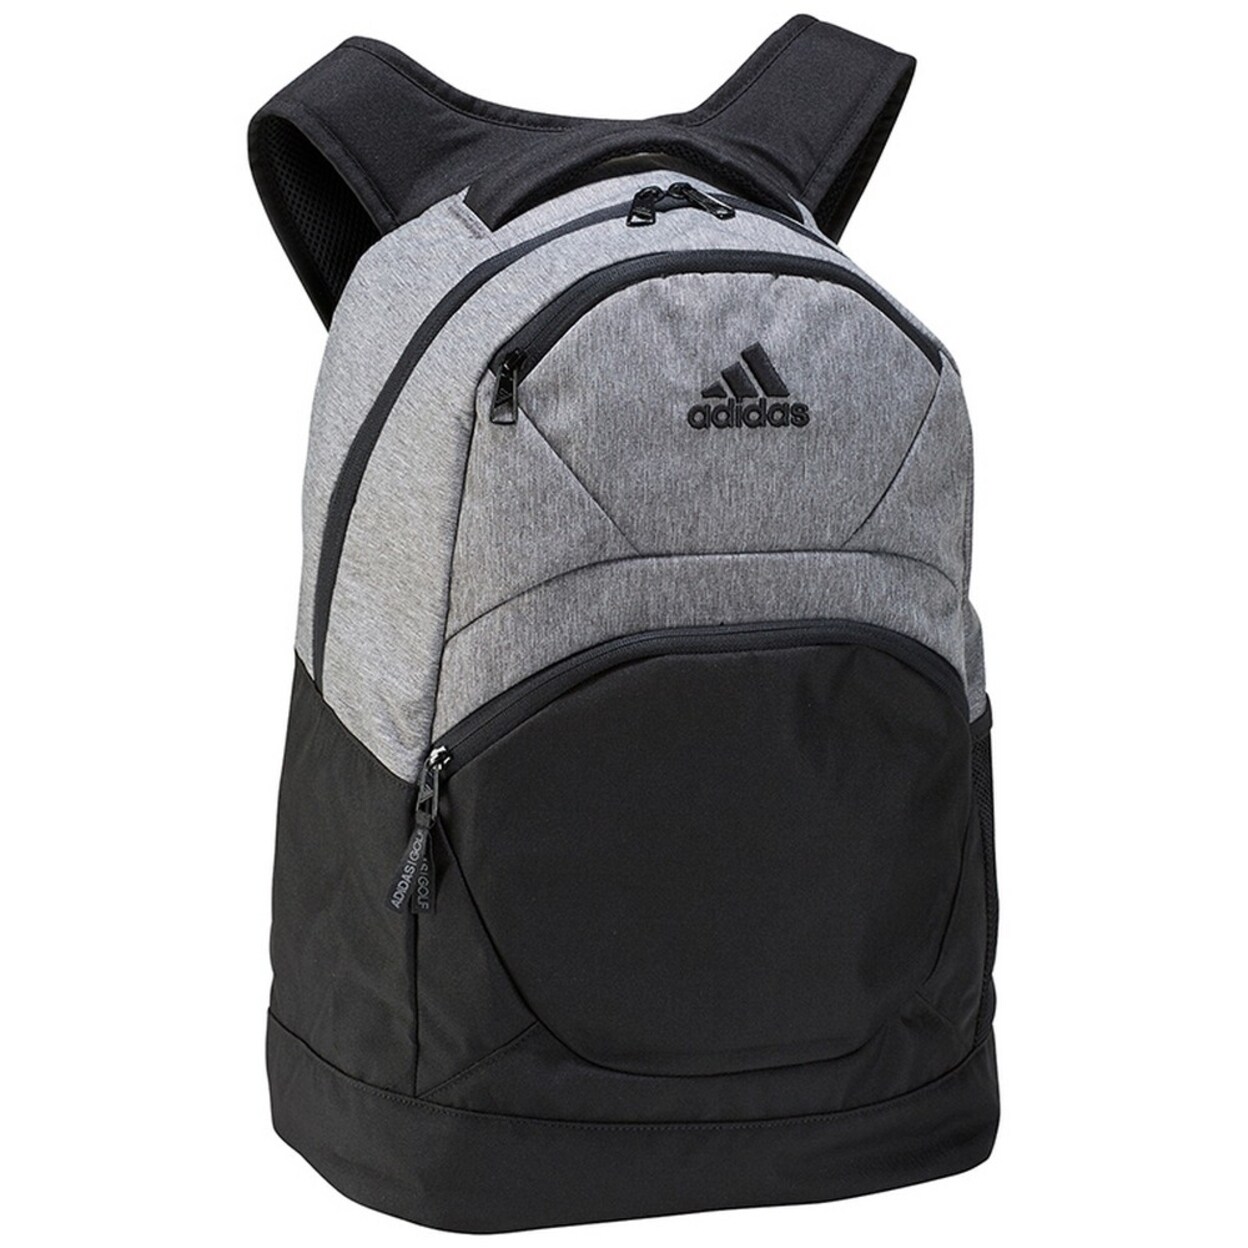 adidas unisex backpack